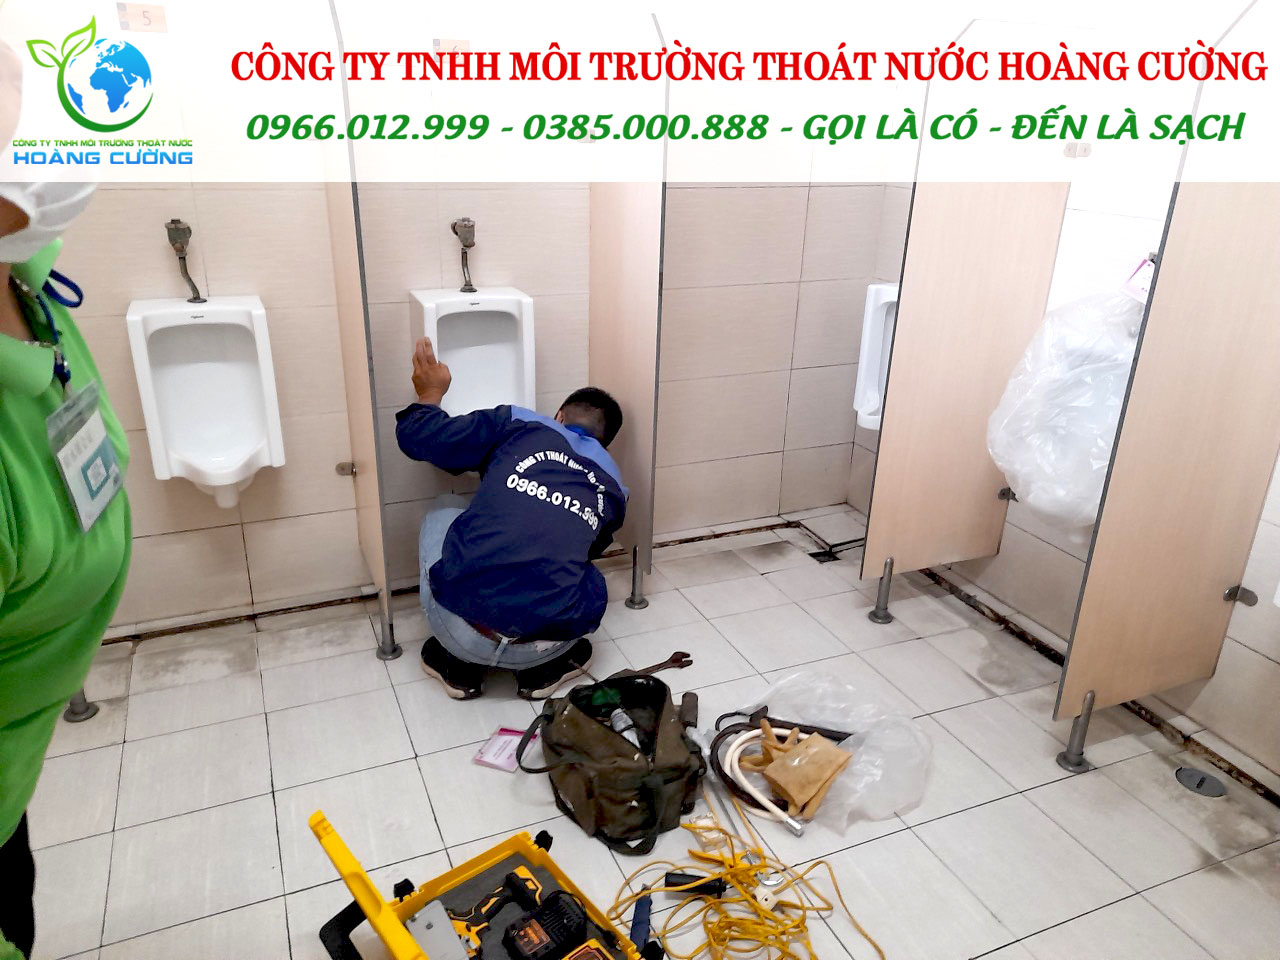 Thông cống nghẹt huyện Tri Tôn chuyên nghiệp, không đục phá